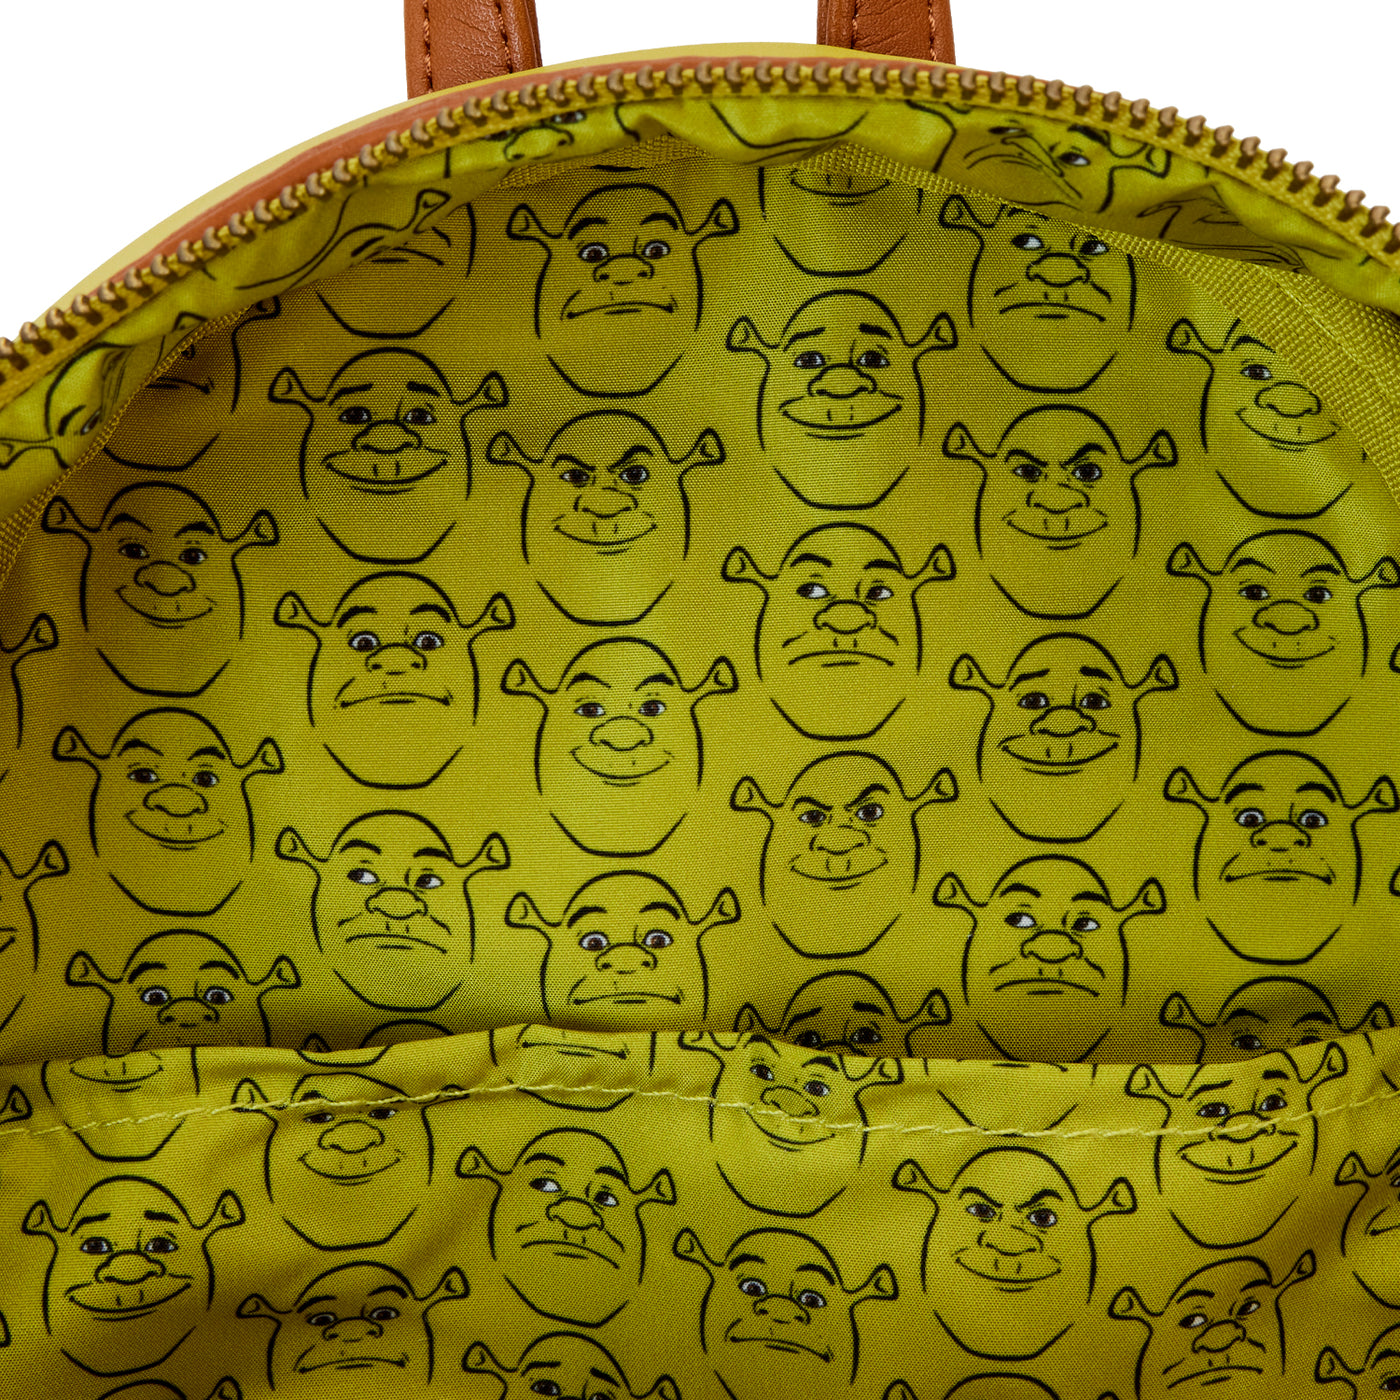 Dreamworks Shrek Keep Out Cosplay Mini Backpack